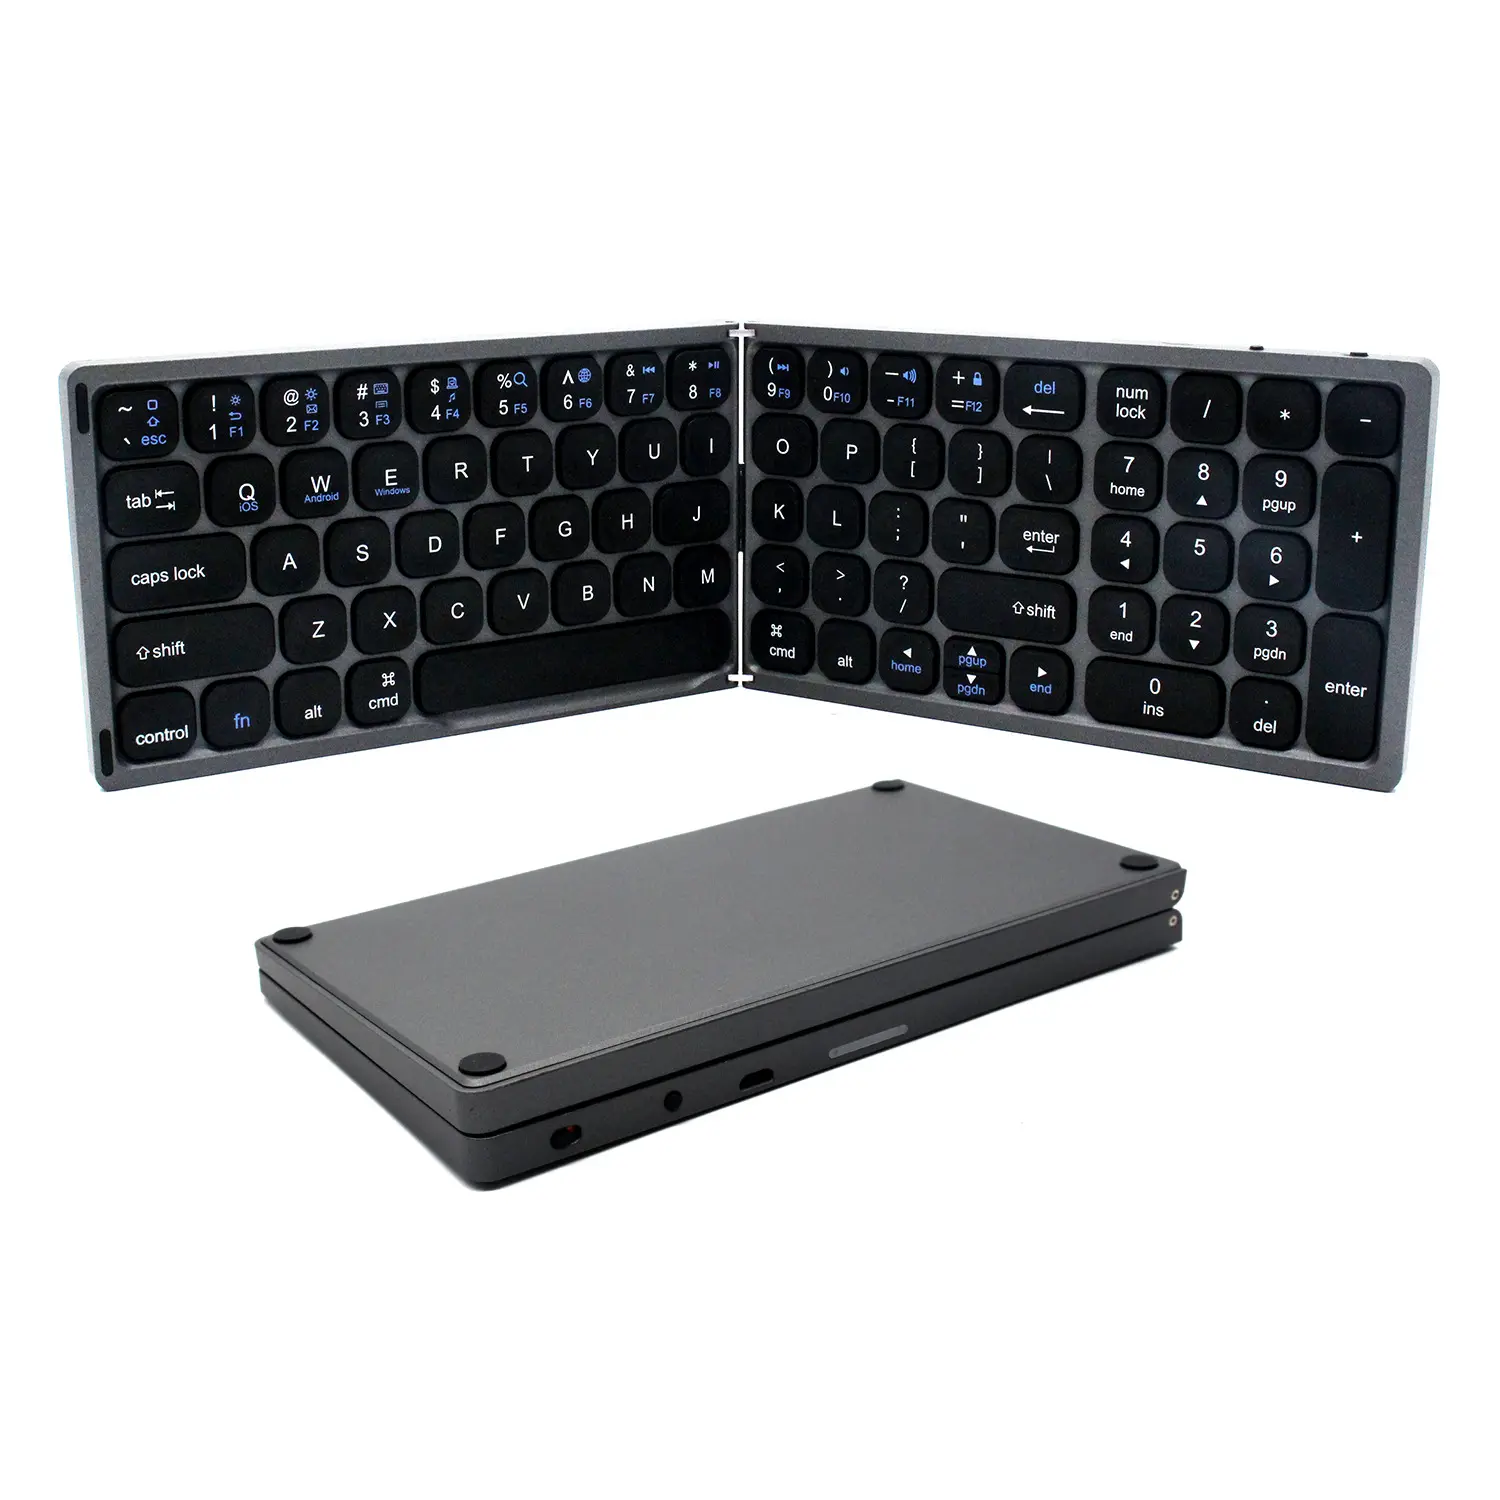 Taşınabilir katlanabilir ince ABS şarj edilebilir mini kablosuz bluetooth klavye 81 tuşları katlanır klavye android ios tablet pc için